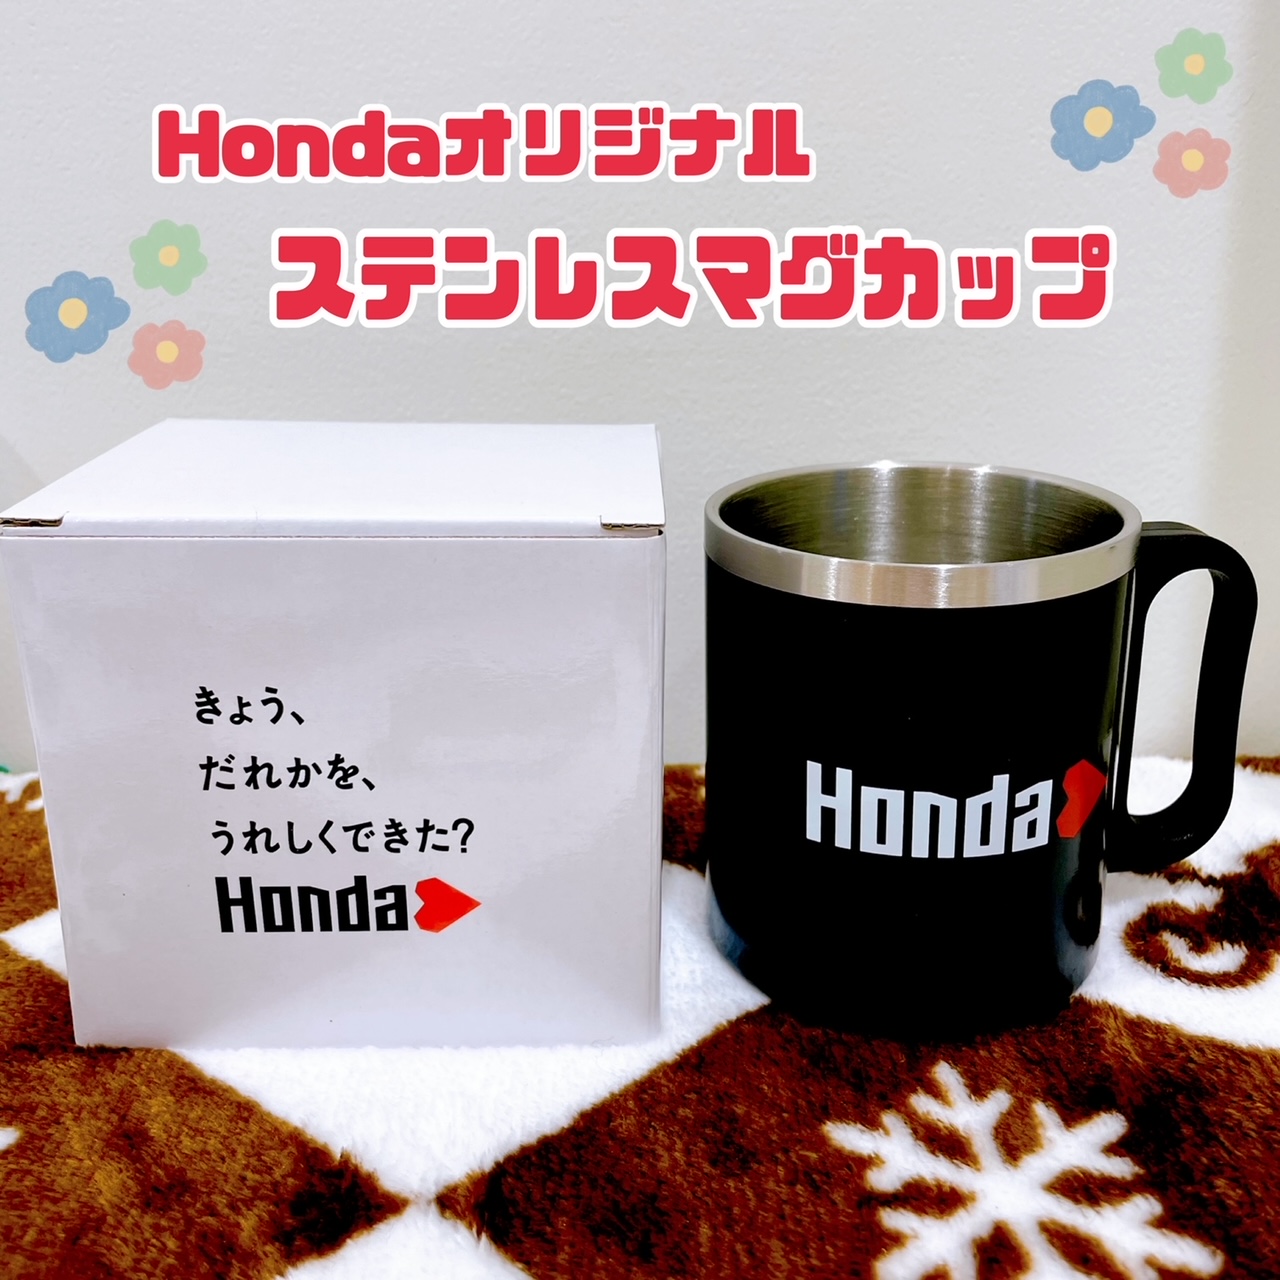 Honda.cup